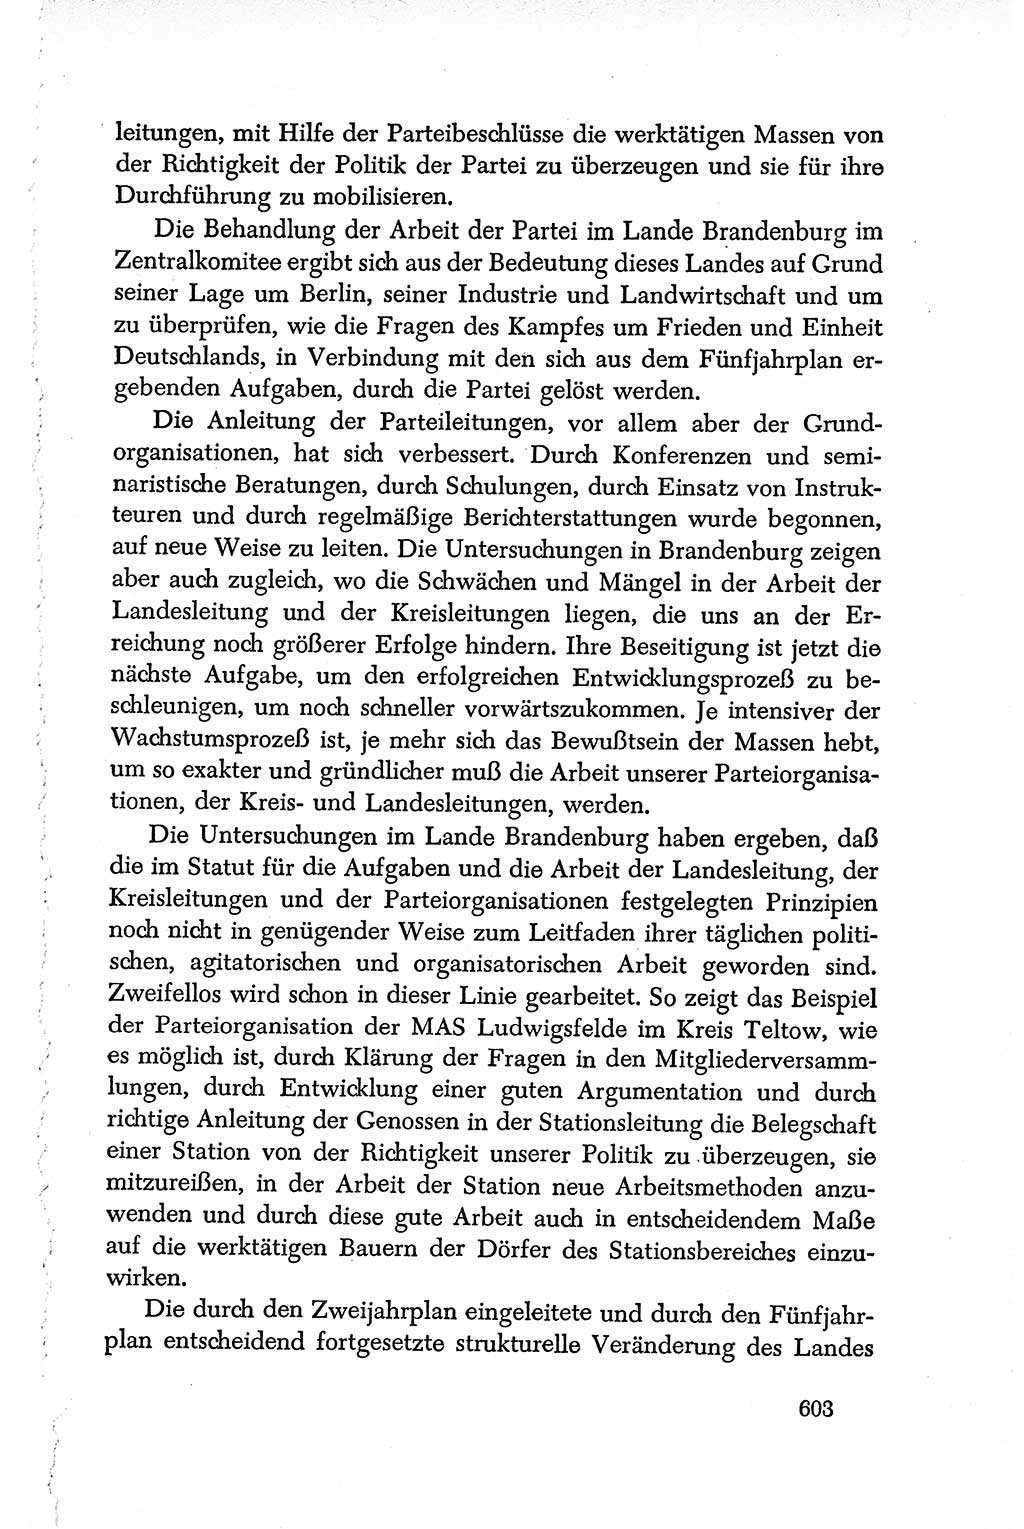 Dokumente der Sozialistischen Einheitspartei Deutschlands (SED) [Deutsche Demokratische Republik (DDR)] 1950-1952, Seite 603 (Dok. SED DDR 1950-1952, S. 603)